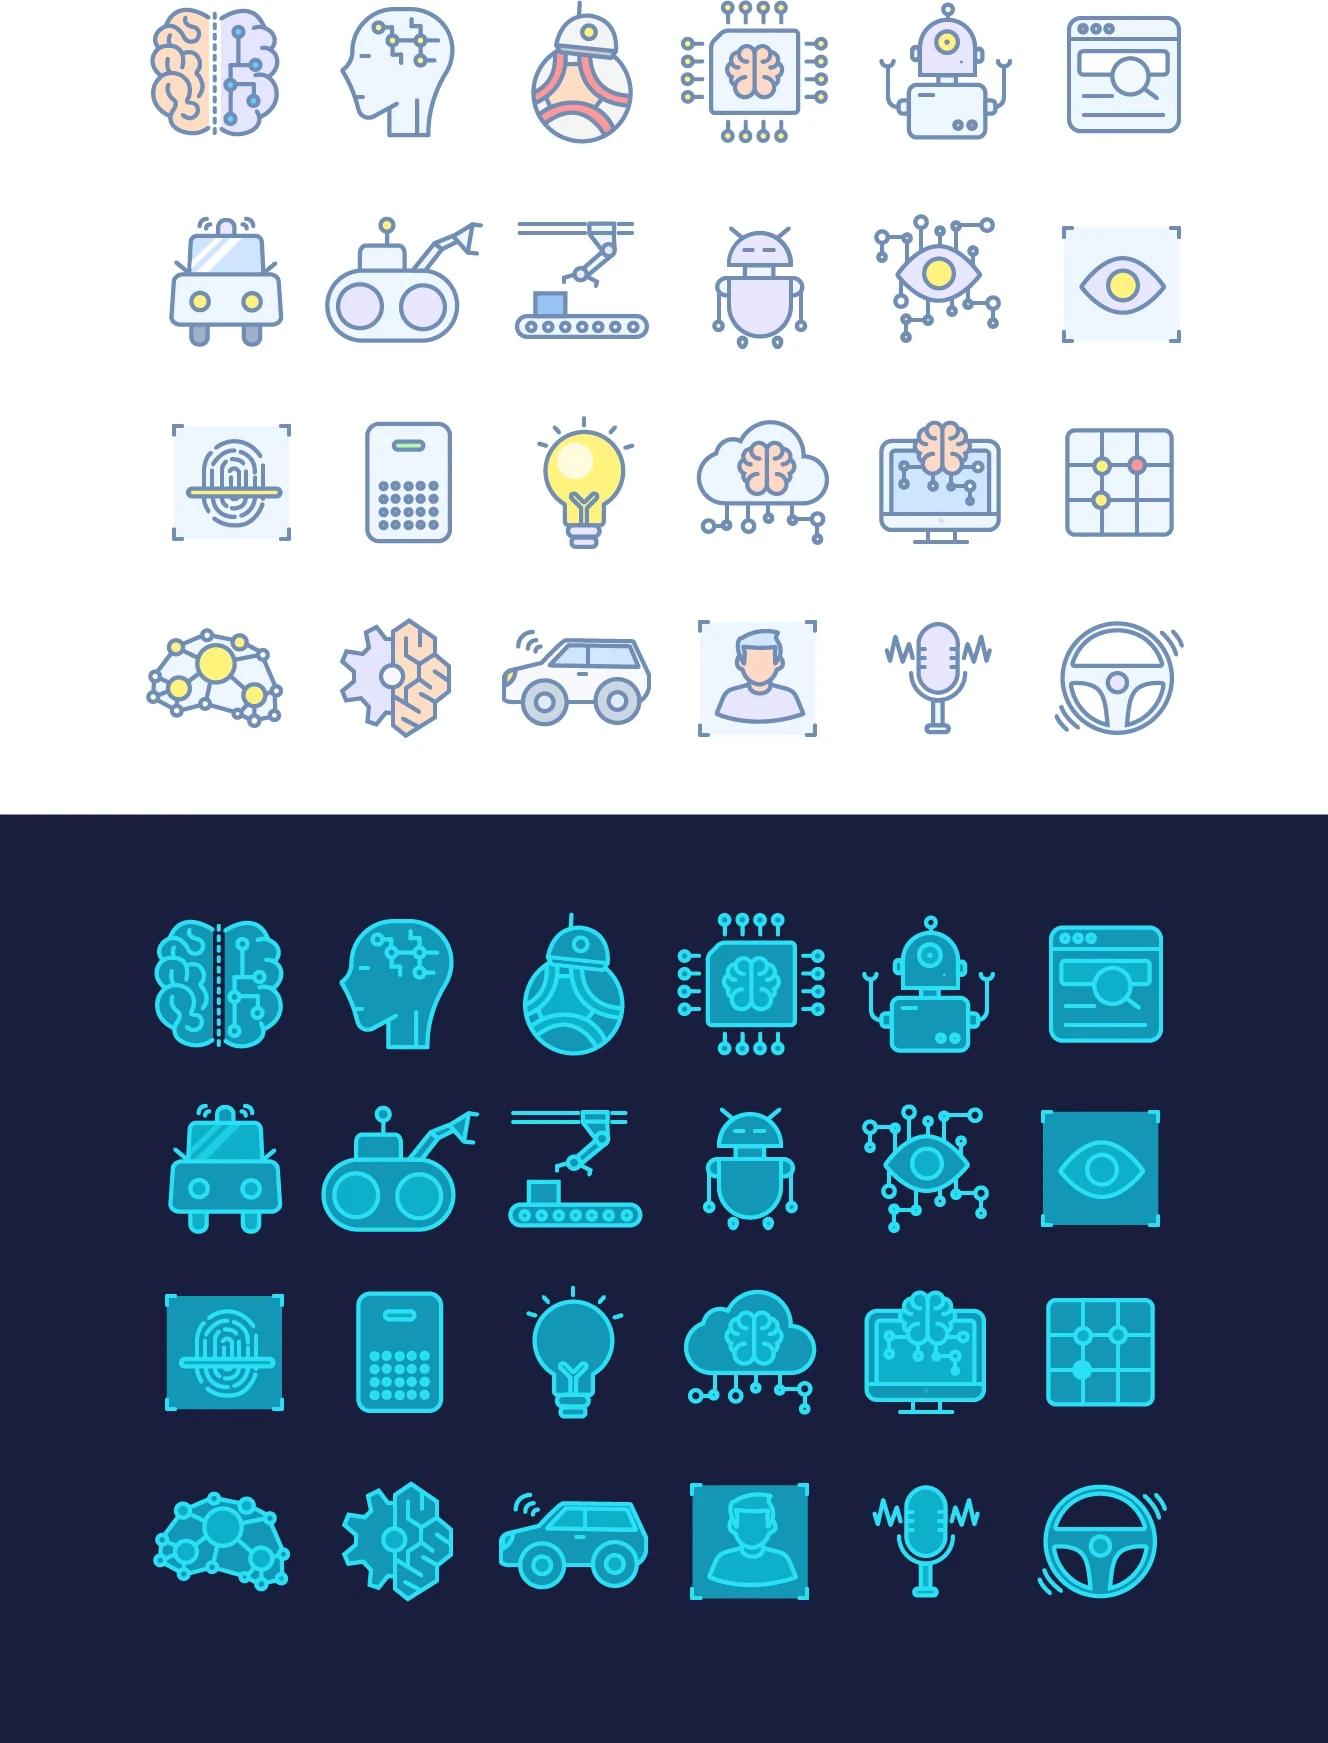 AI Free Icon Set by Xiaojianjian - Free icon set designed by xiaojianjian, with 2 icon styles.